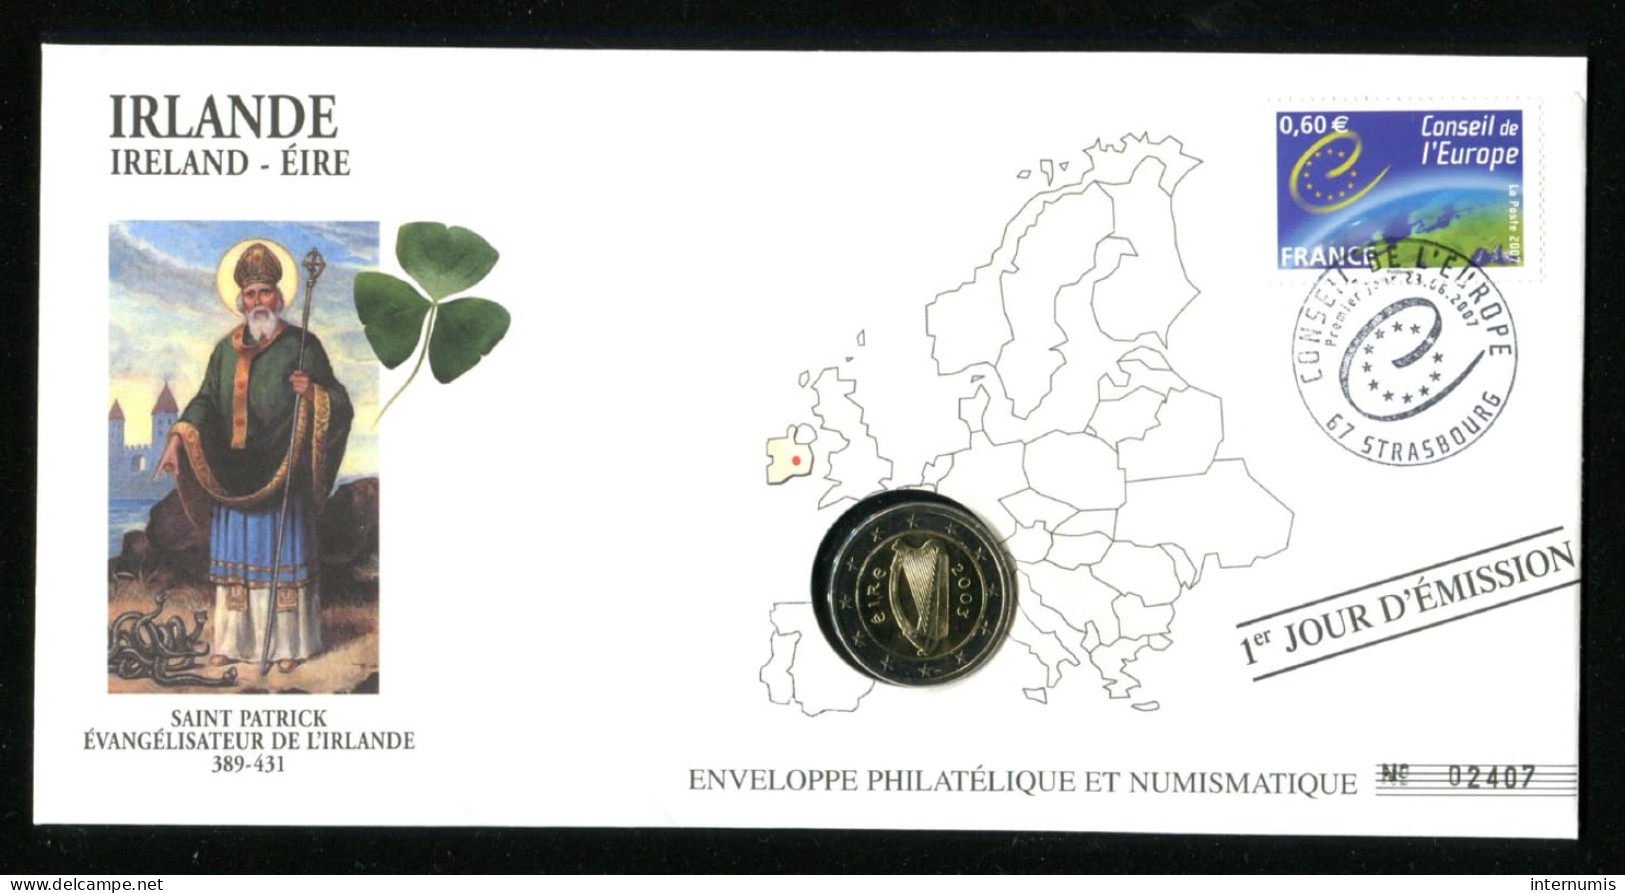 Irlande / Ireland, 2 Euro, 2003, 1er Jour D'Emission (23-06-2007) - Enveloppe Philatélique Et Numismatique - Irlanda